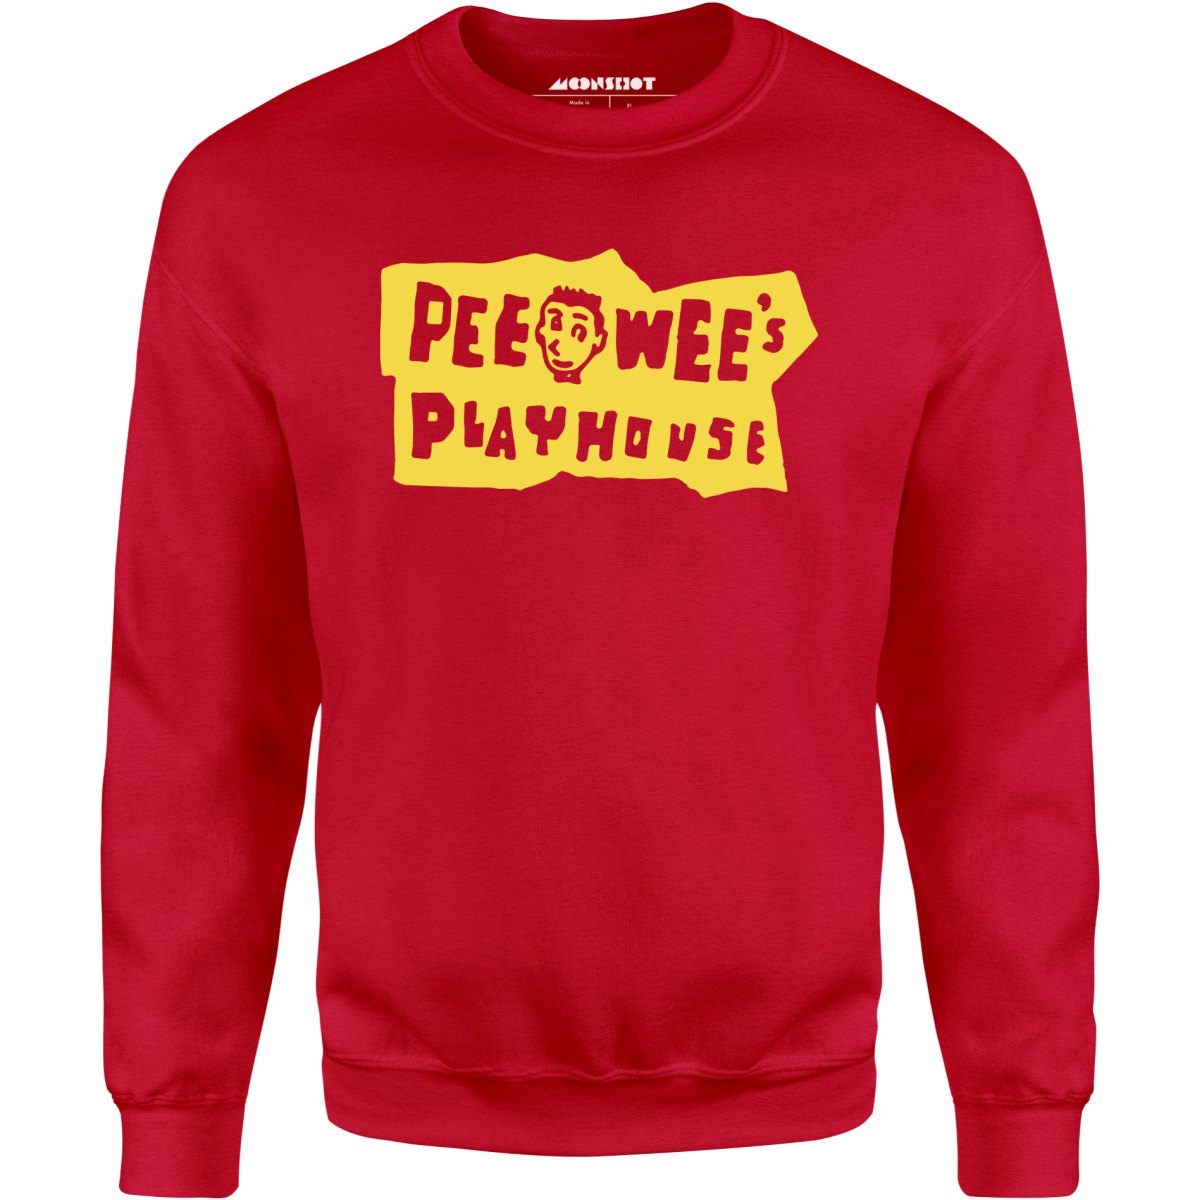 Pee Wee's Playhouse - Unisex Sweatshirt